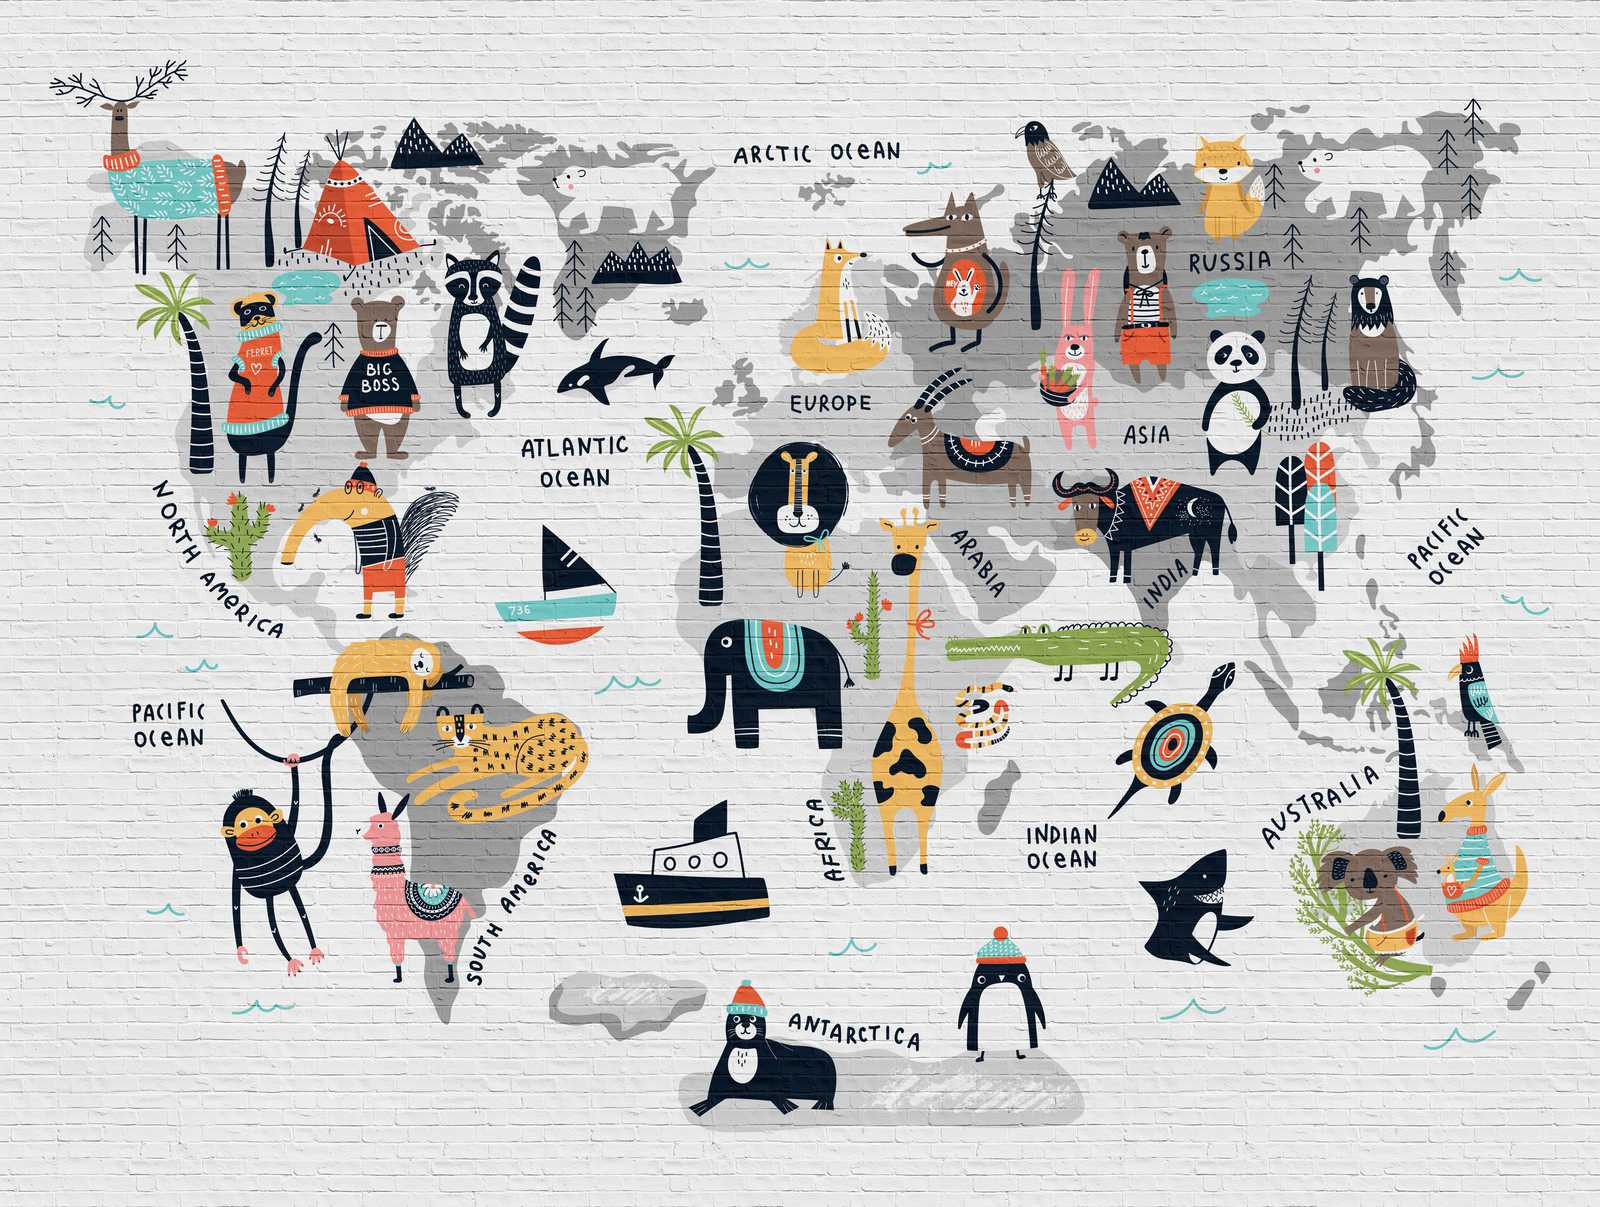             papel pintado novedad | papel pintado habitación infantil mapa del mundo con motivos animales
        